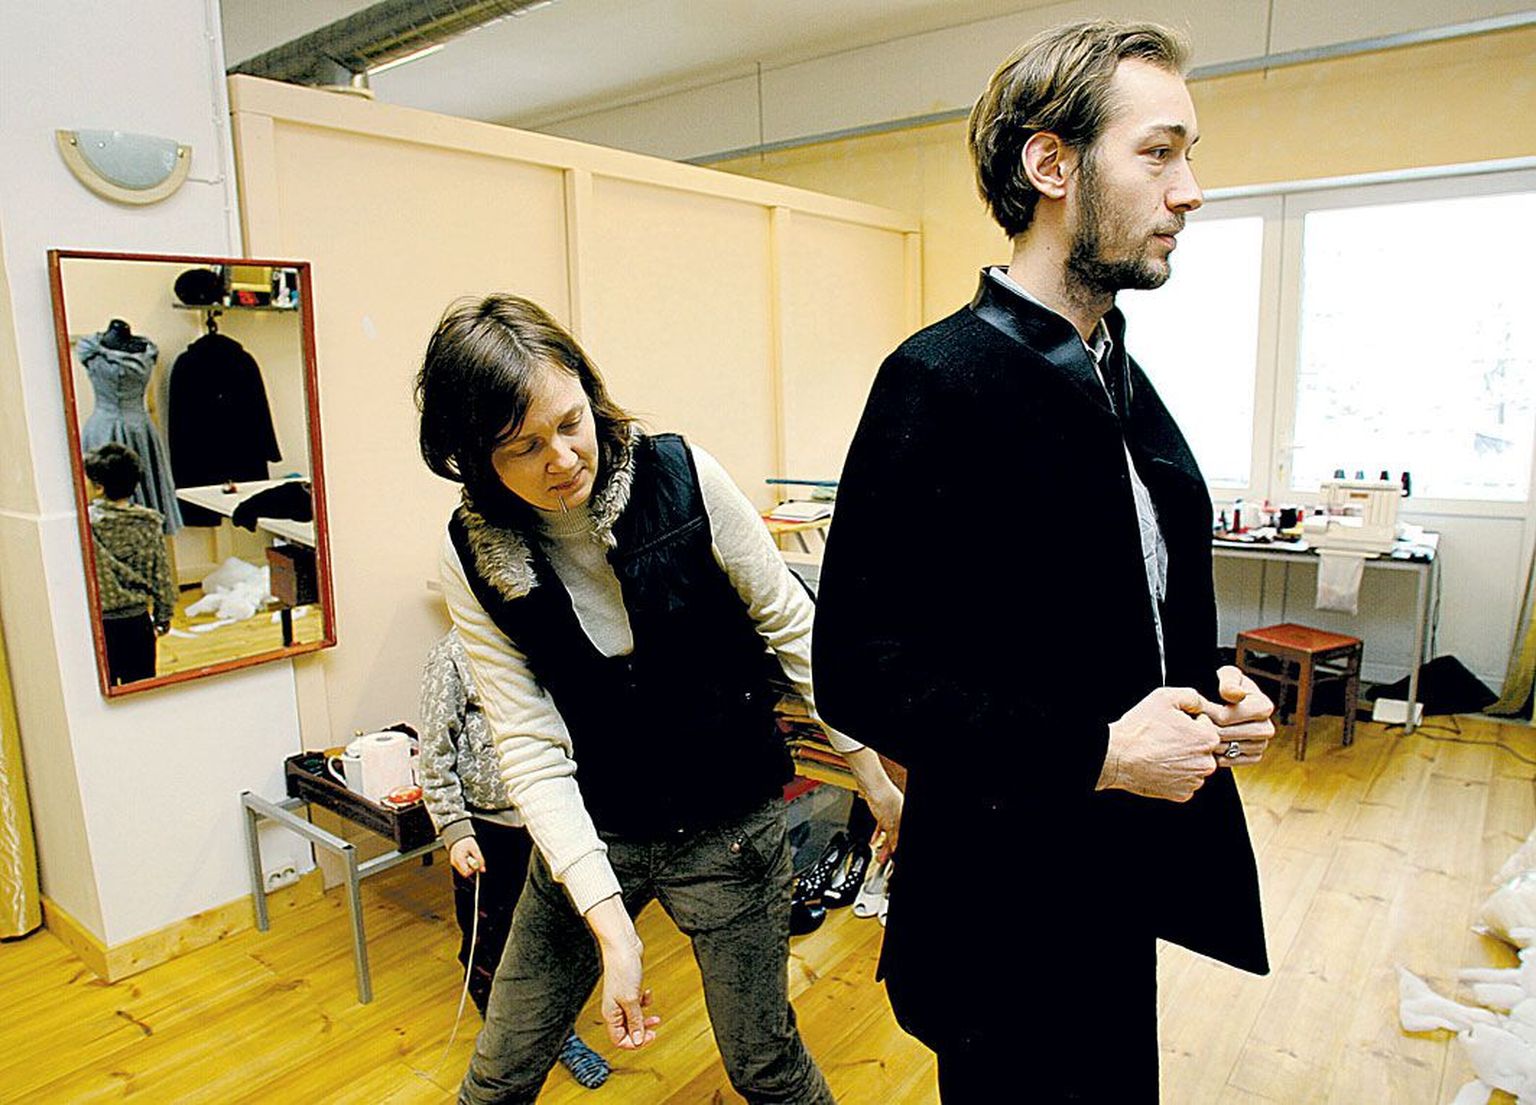 Noor-Eesti loomekeskuses tegutsev moedisainer Maarika Kilusk passib Lemmit Kaplinskile selga tema tellimusel valmivat pintsakut.